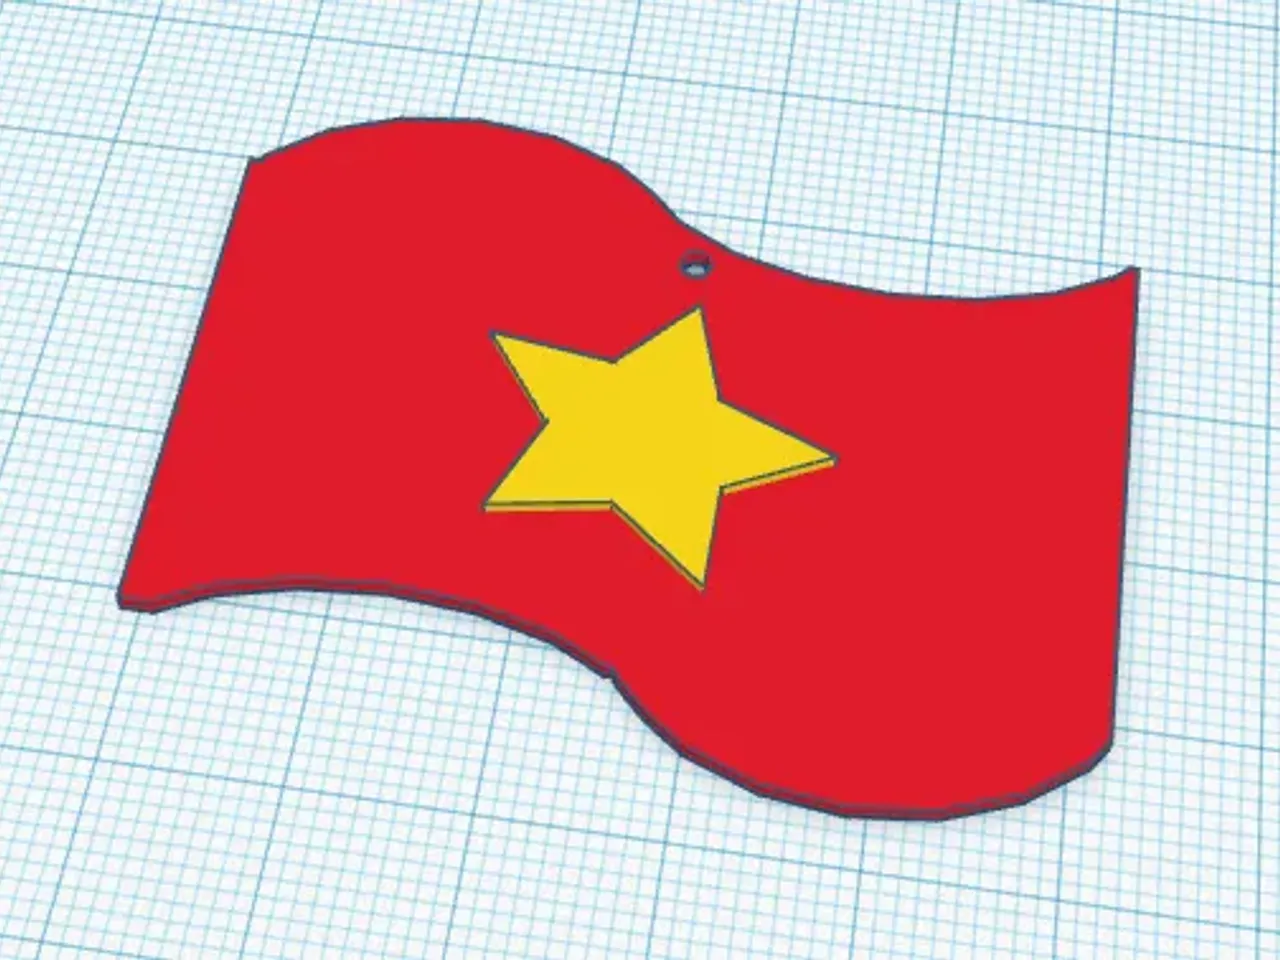 Trang trí bằng quà tặng độc đáo cùng hình ảnh lá cờ Việt Nam là một cách thể hiện tình yêu dành cho quê hương và đất nước. Với thiết kế đơn giản và tinh tế, bộ trang trí này chắc chắn sẽ gợi lên trái tim yêu nước của bạn.